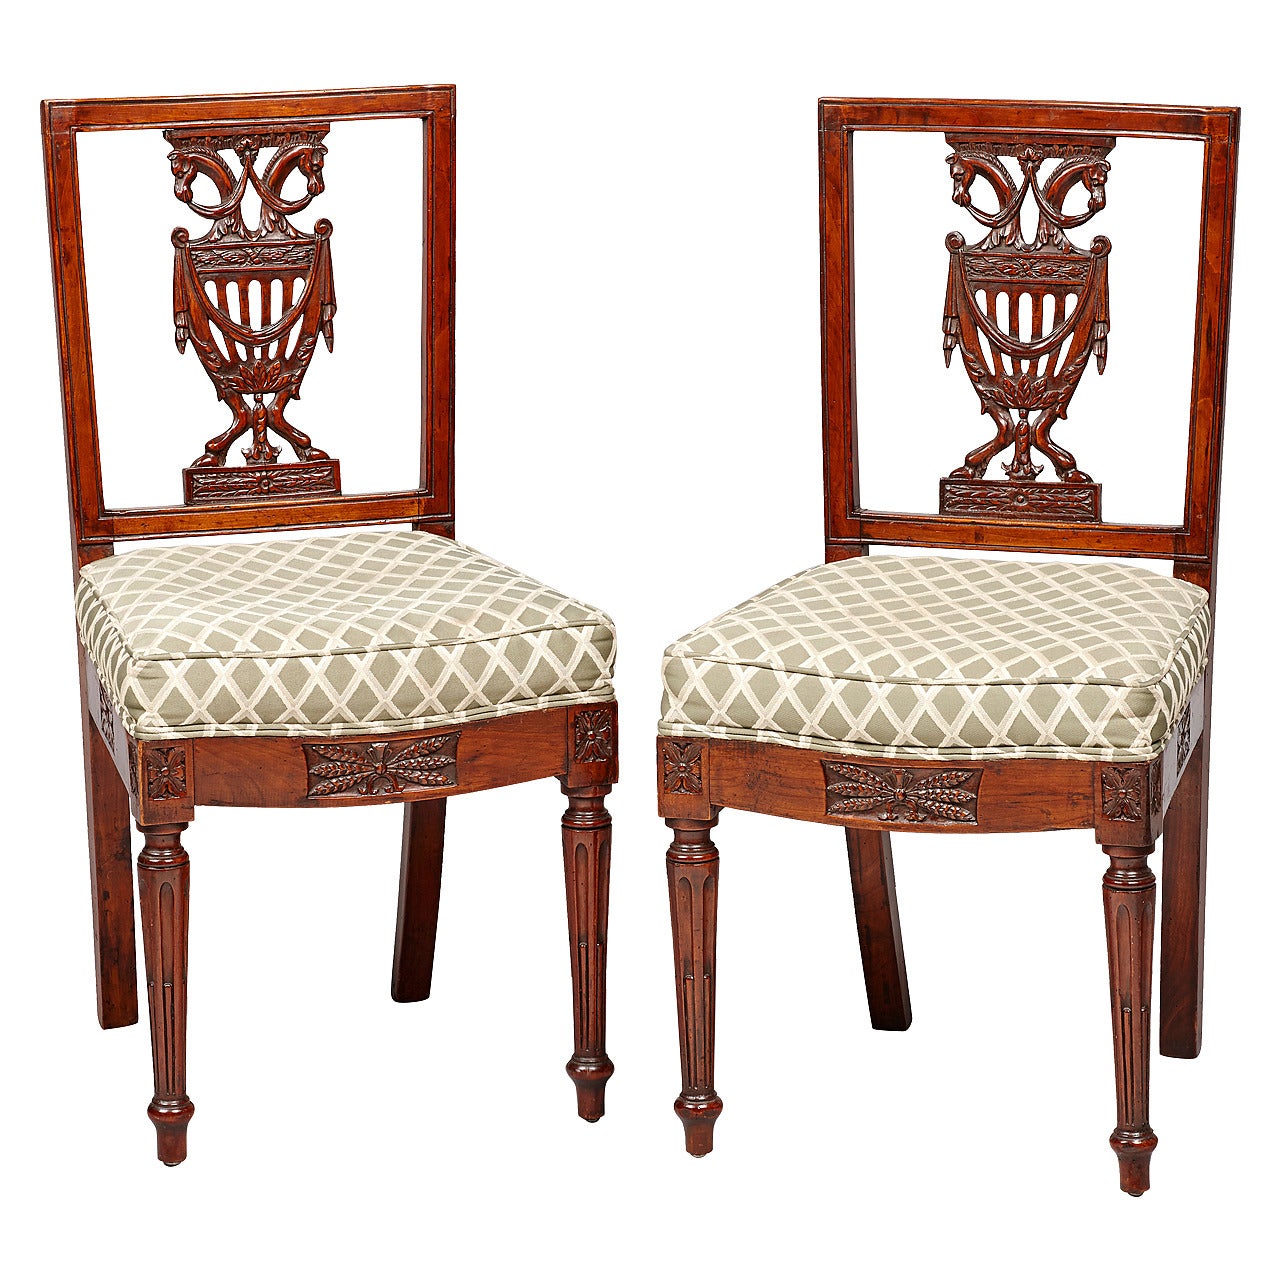 Paire de chaises d'appoint néoclassiques royales de la fin du XVIIIe siècle de style Berlin